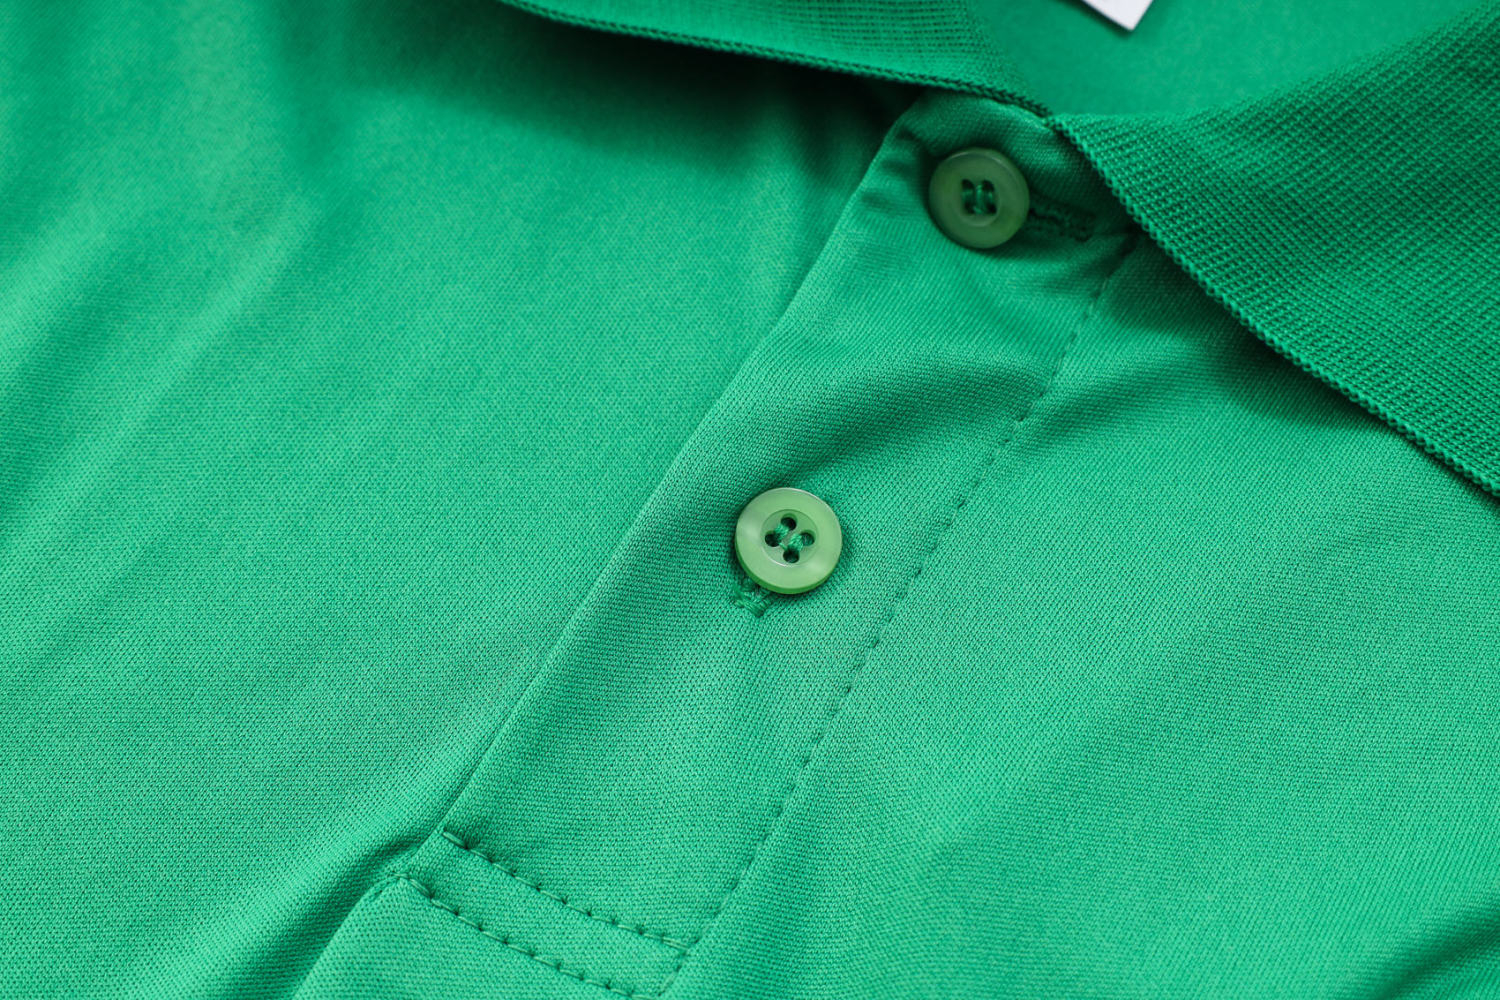 Men's Mexico Green Polo Jersey 2023